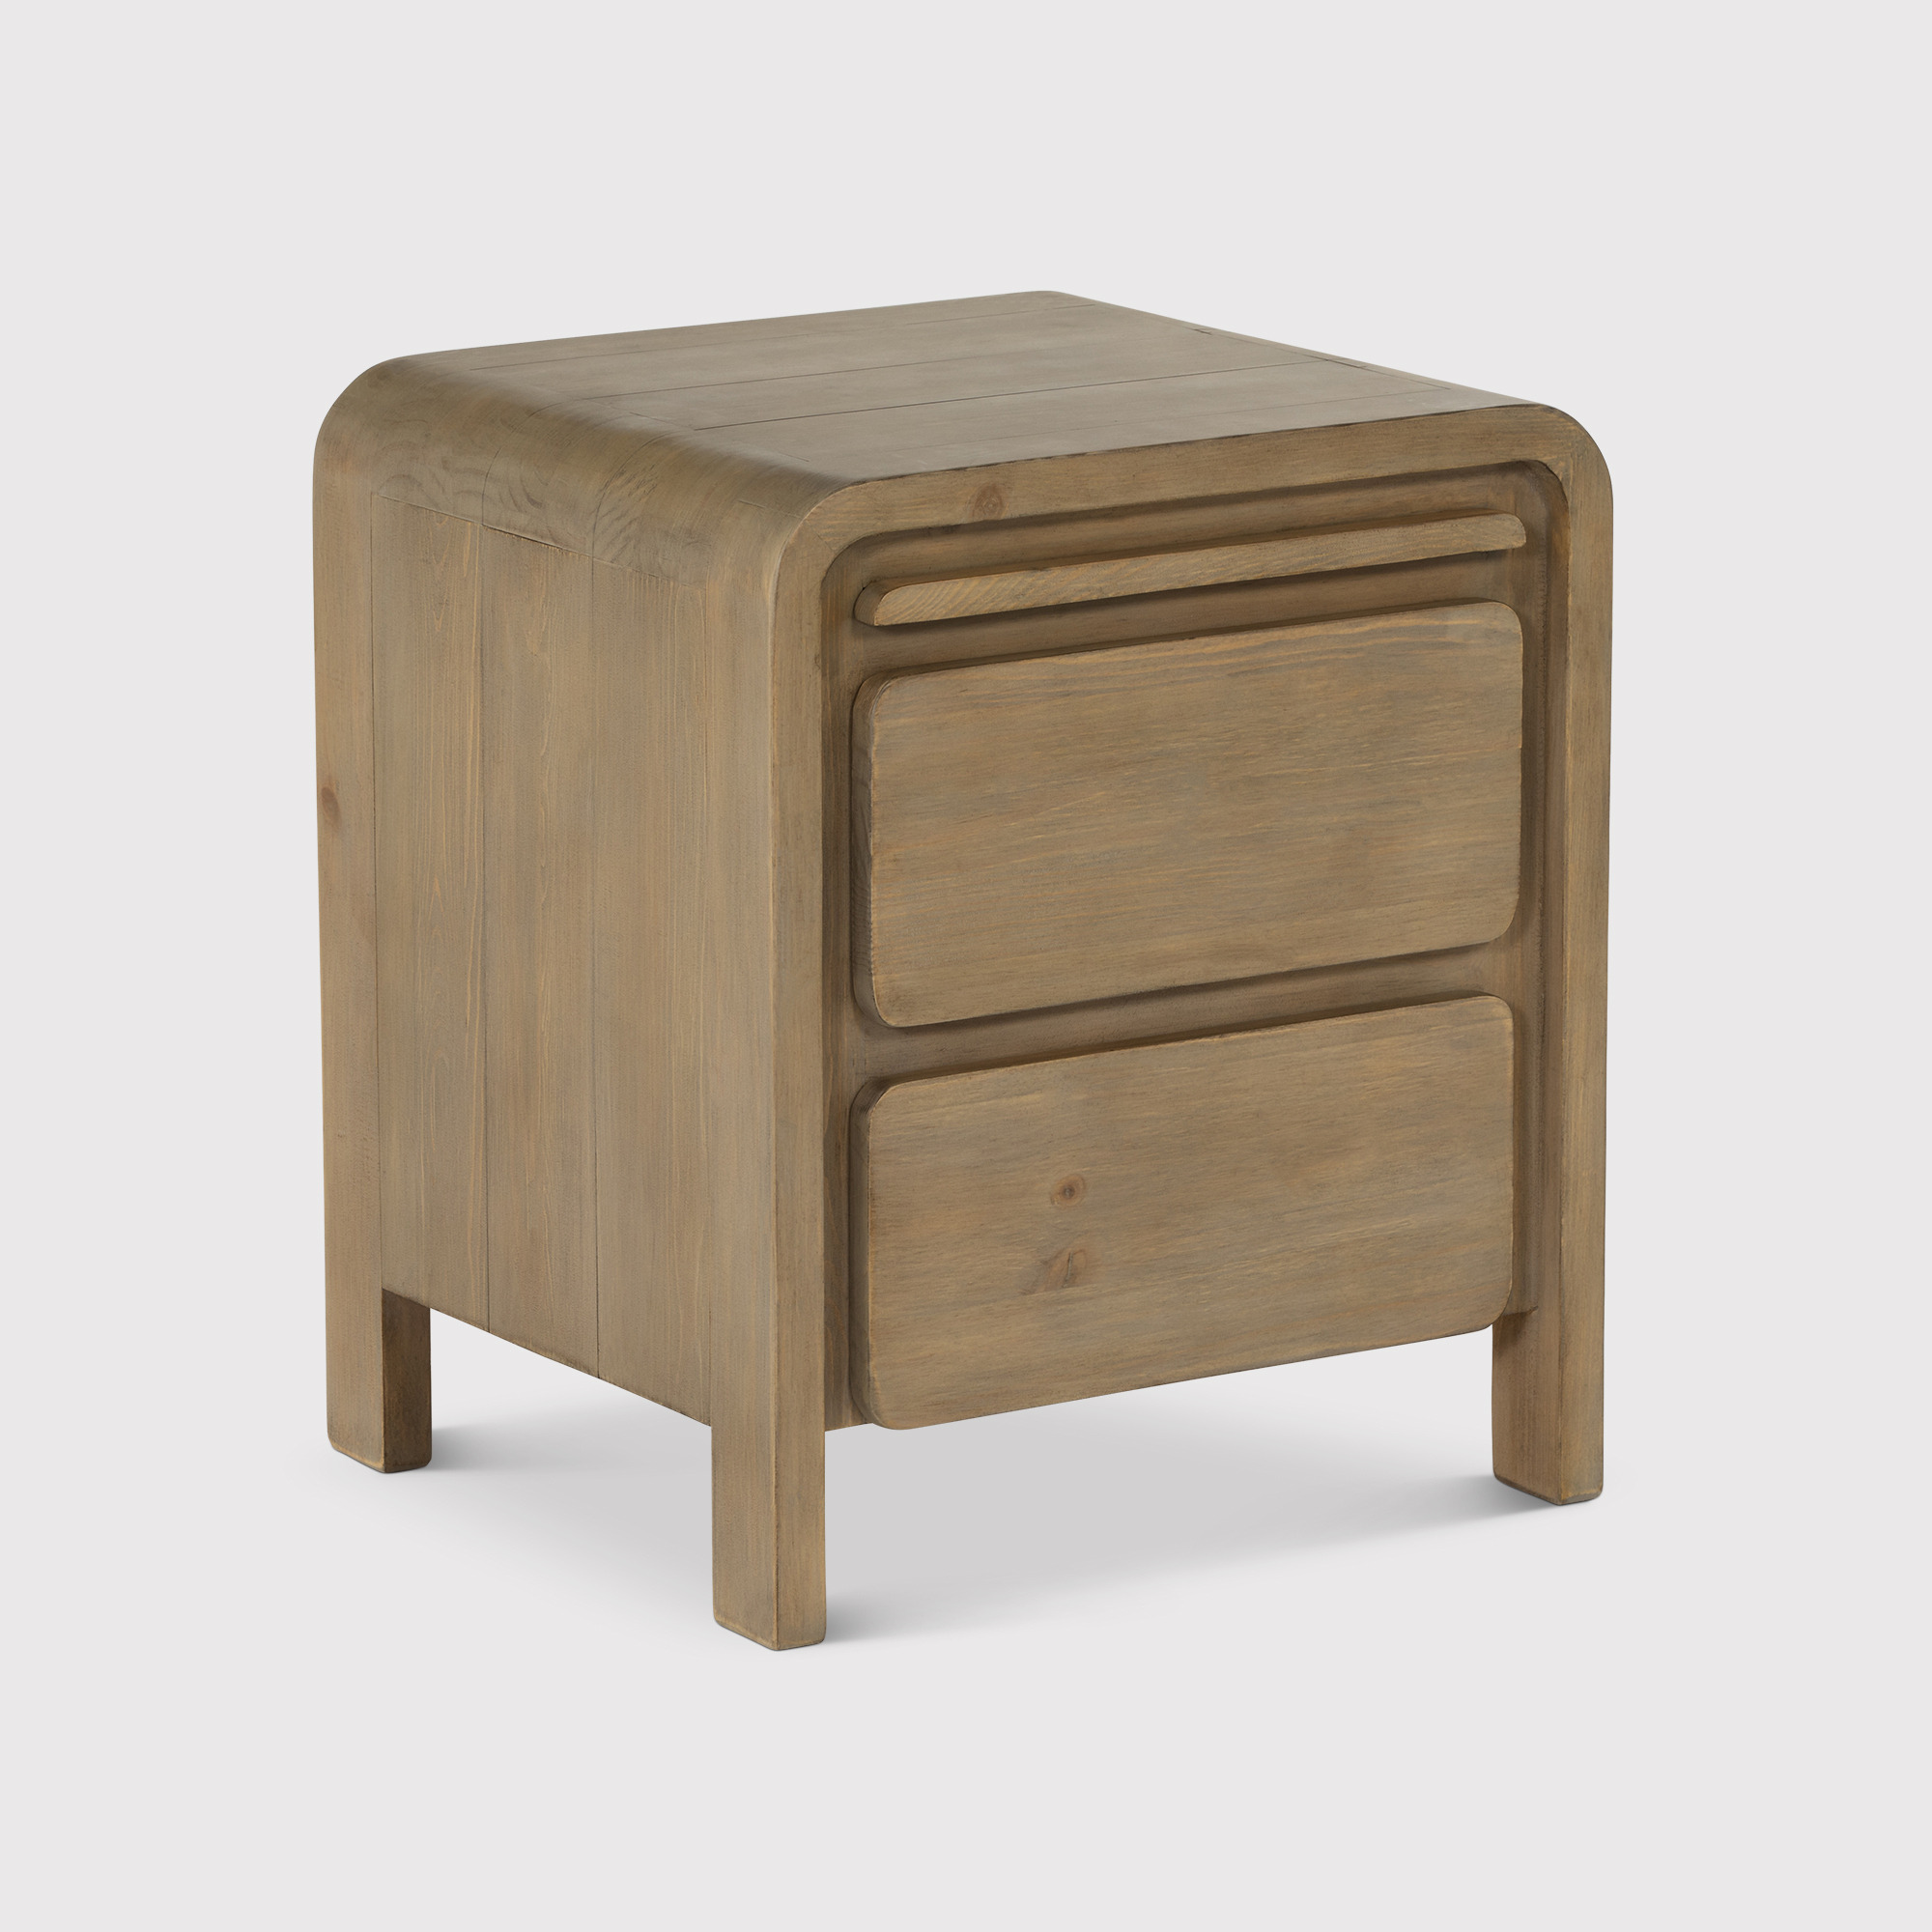 Tosca 2 Drawer Bedside Cabinet, Wood - Barker & Stonehouse - image 1